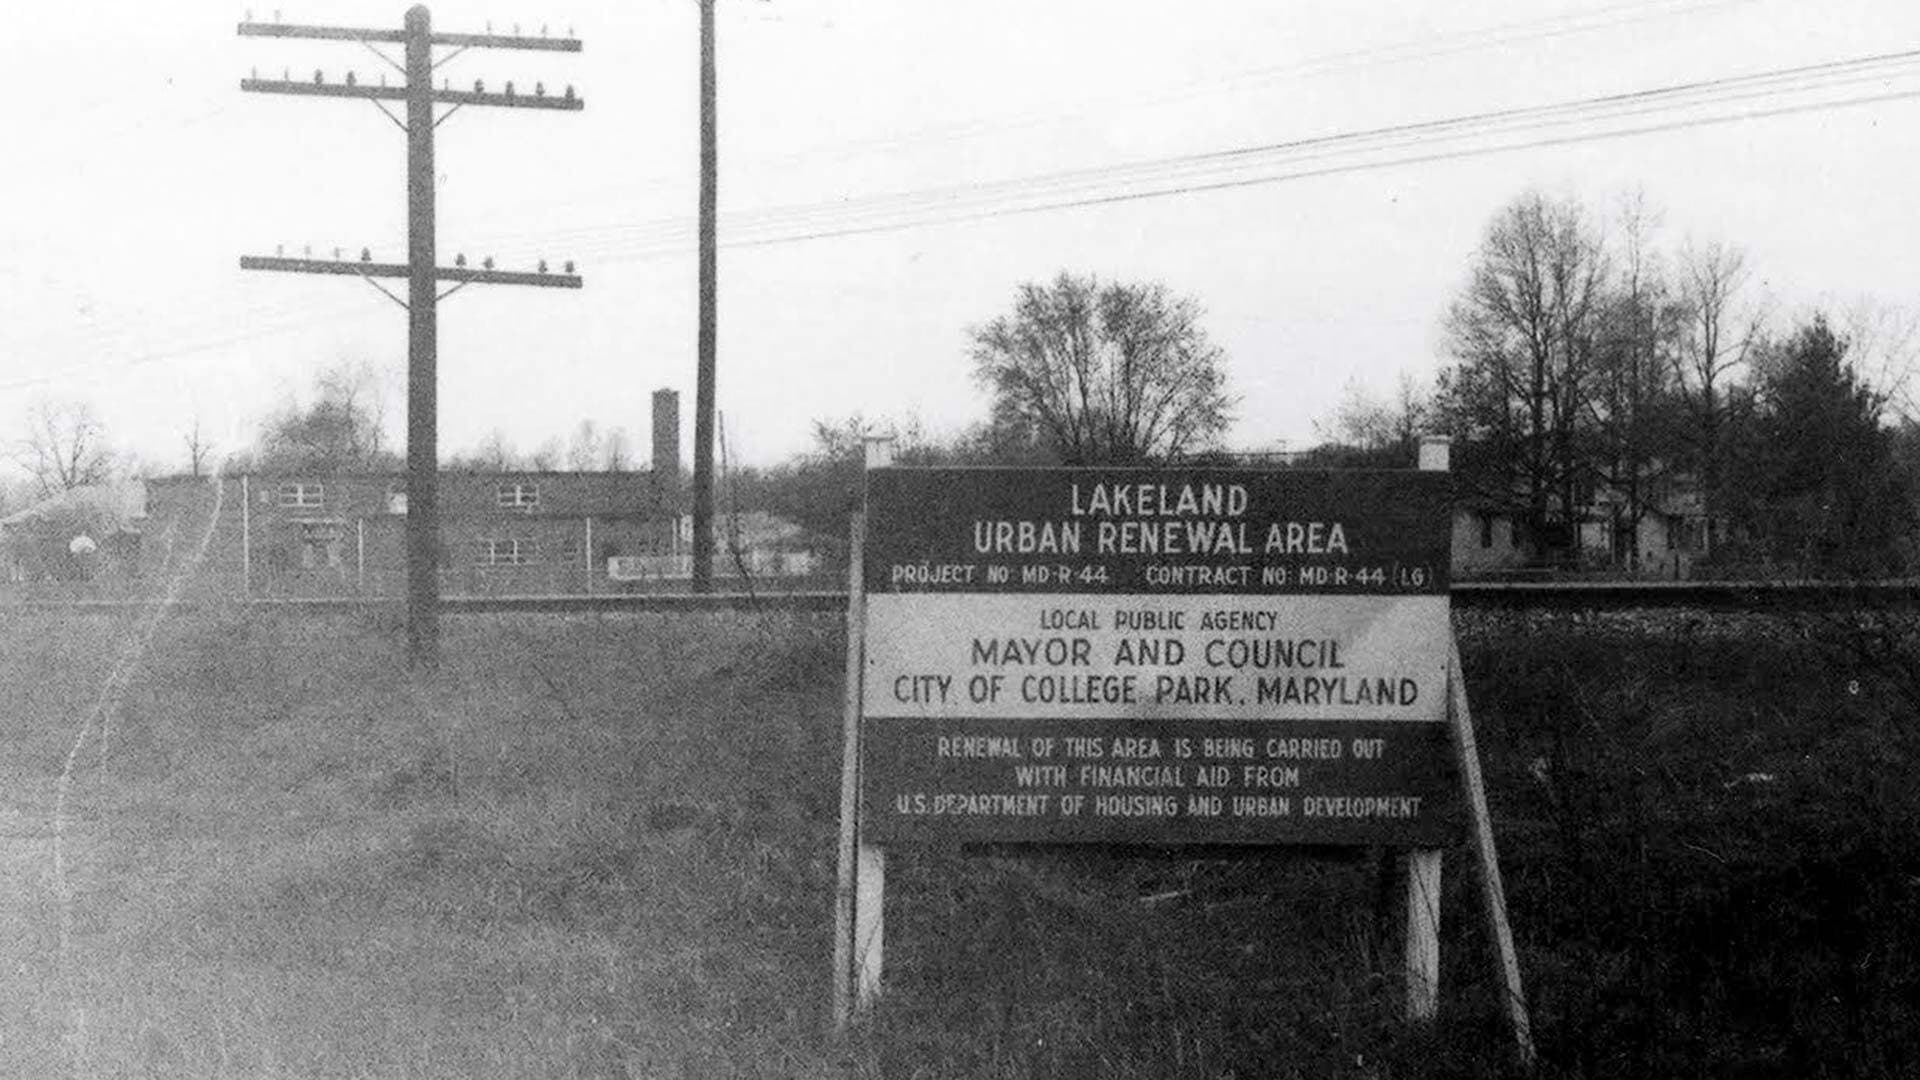 Sign showing Lakeland Urban Renewal Area